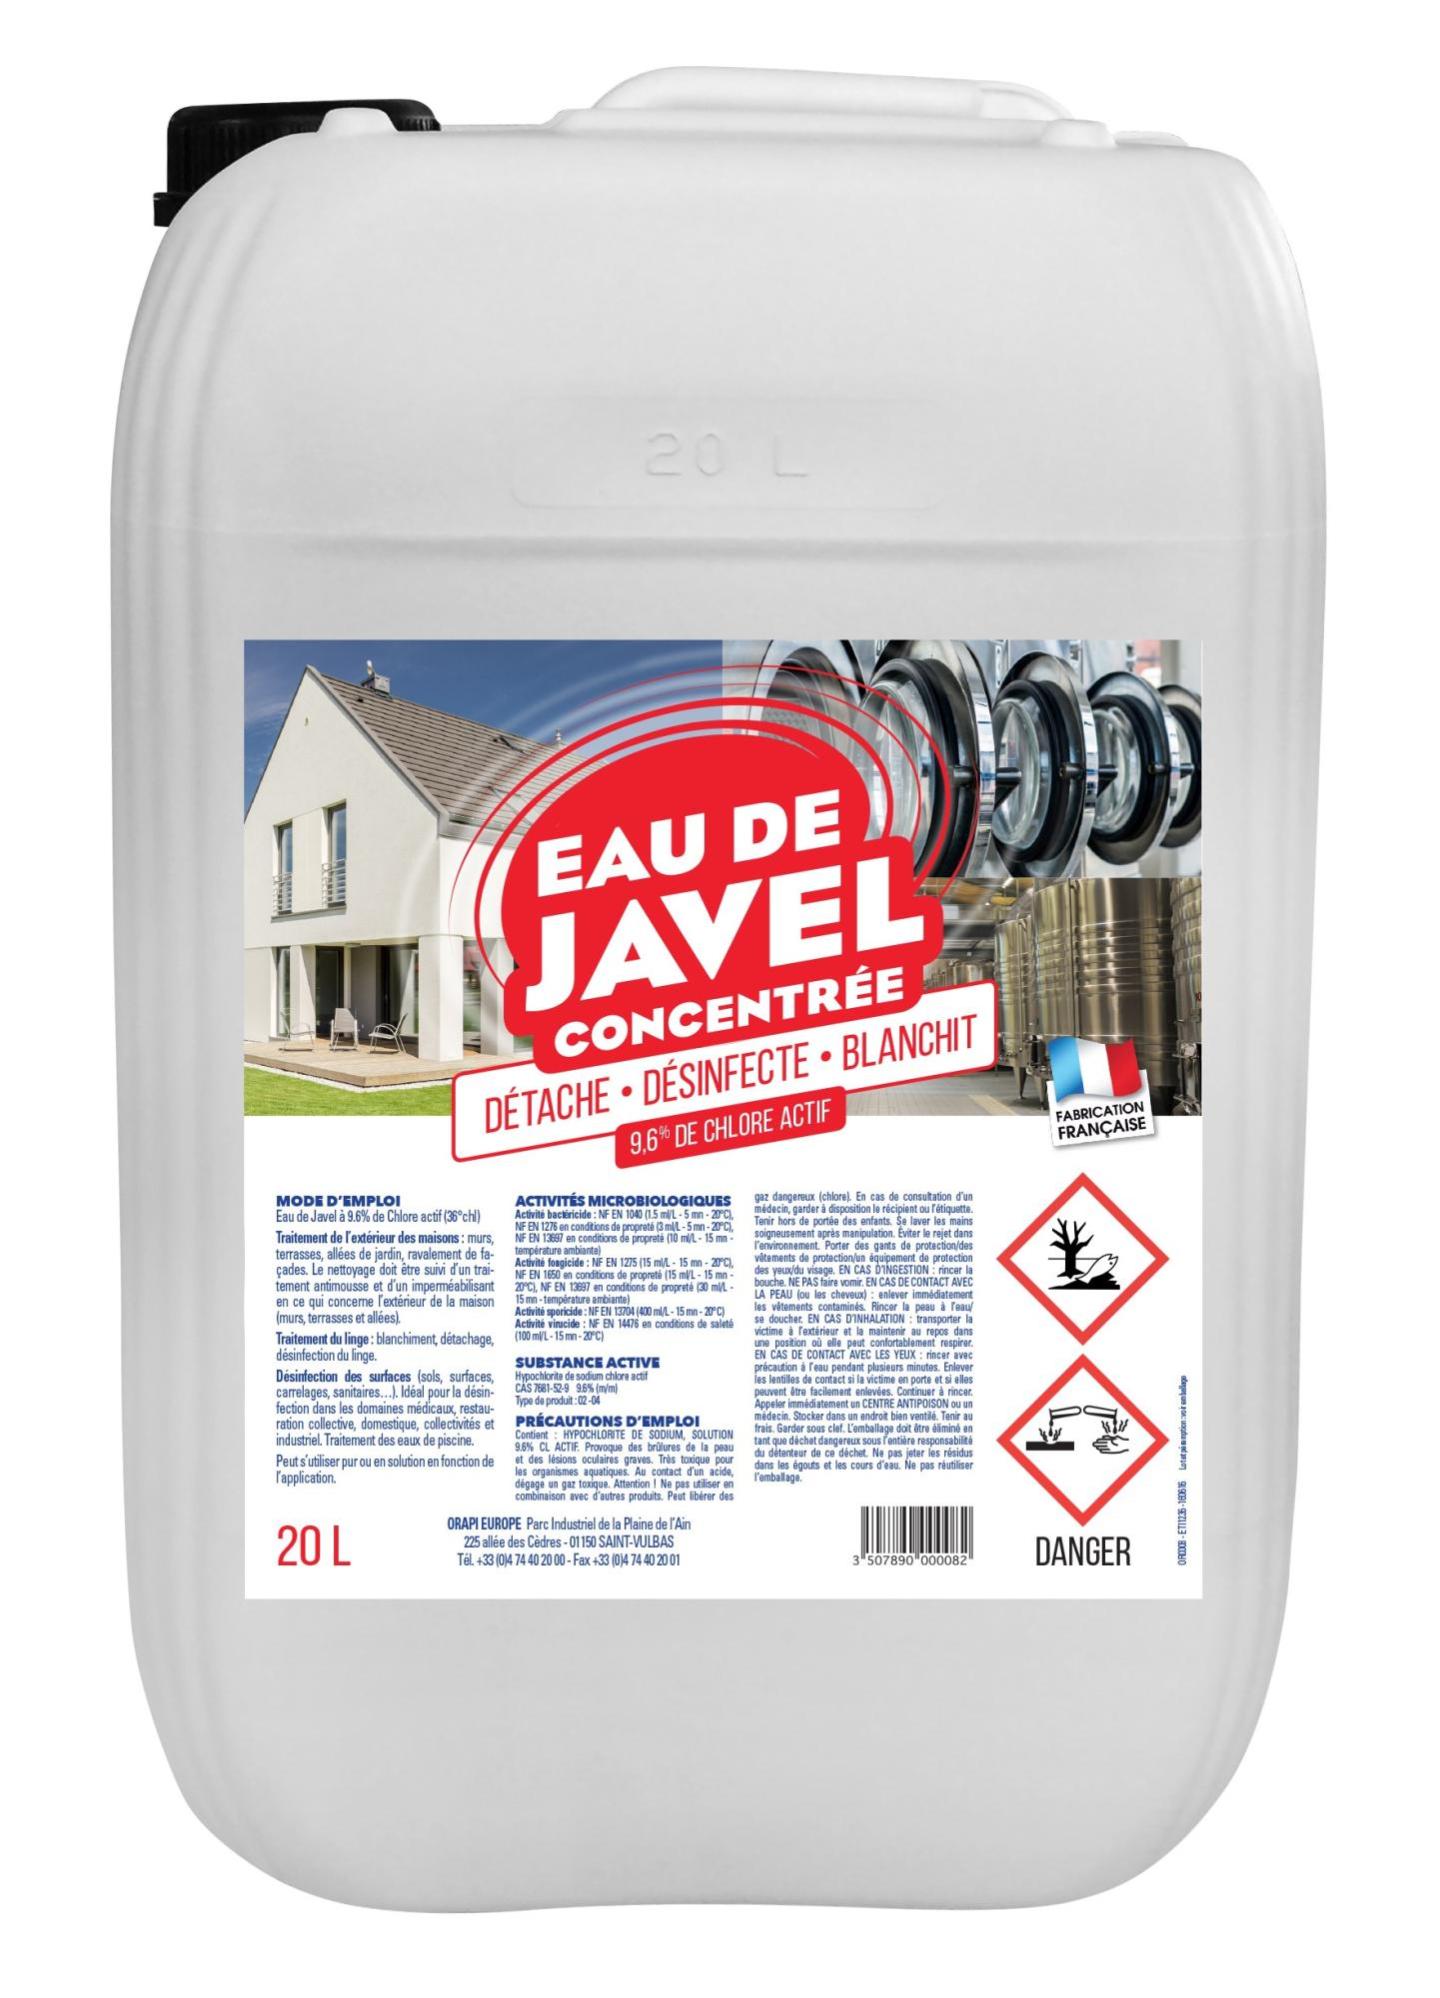 Catalogue - Javel BEC